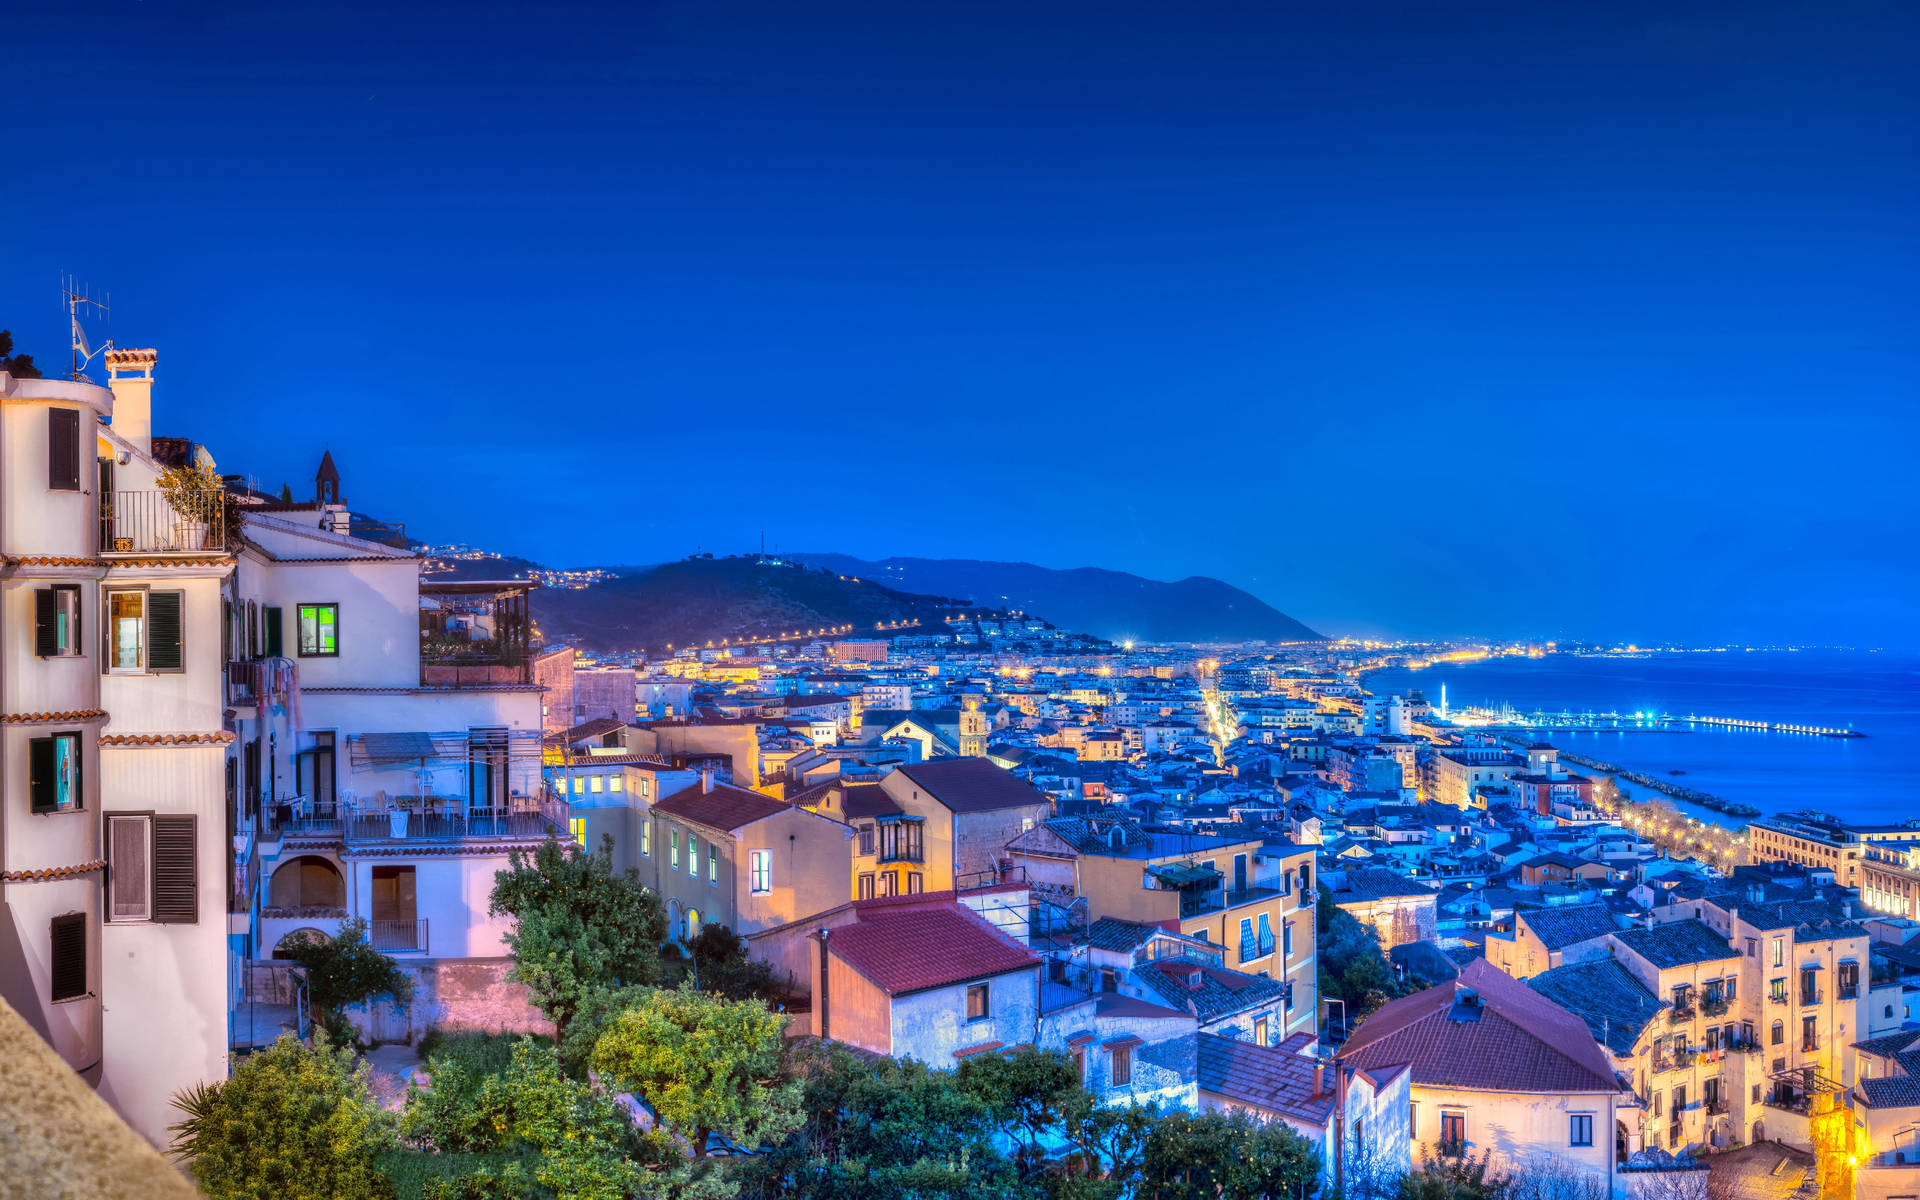 Amalfi Italy City Lights Background